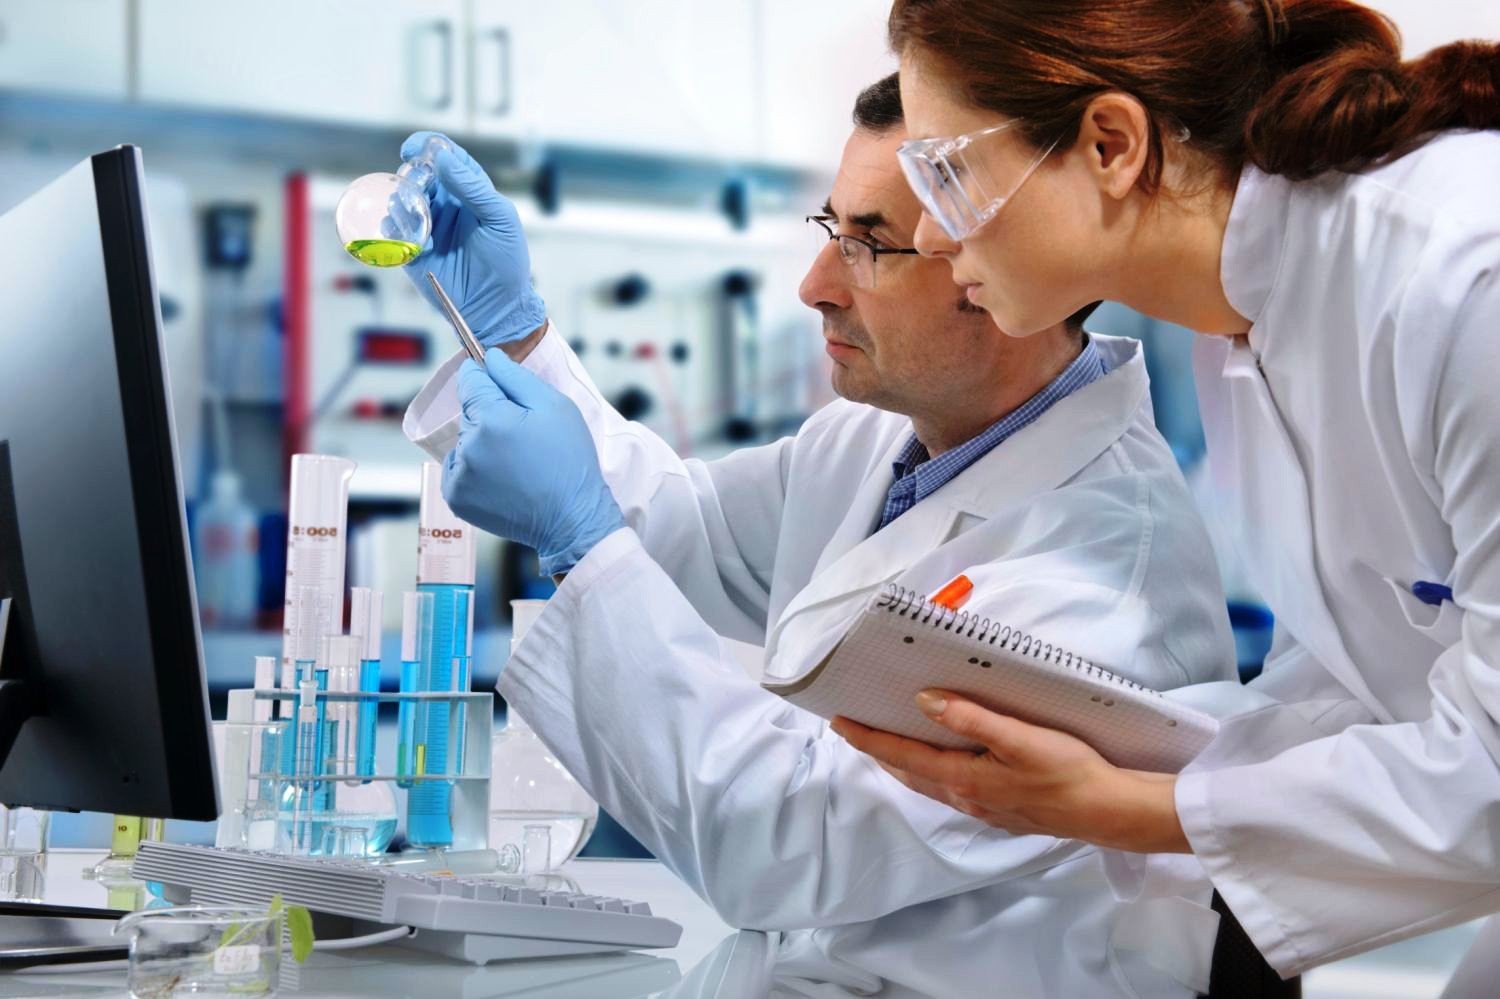 34 биомедицинских клеточных продукта находятся на стадии разработки и доклинических исследований